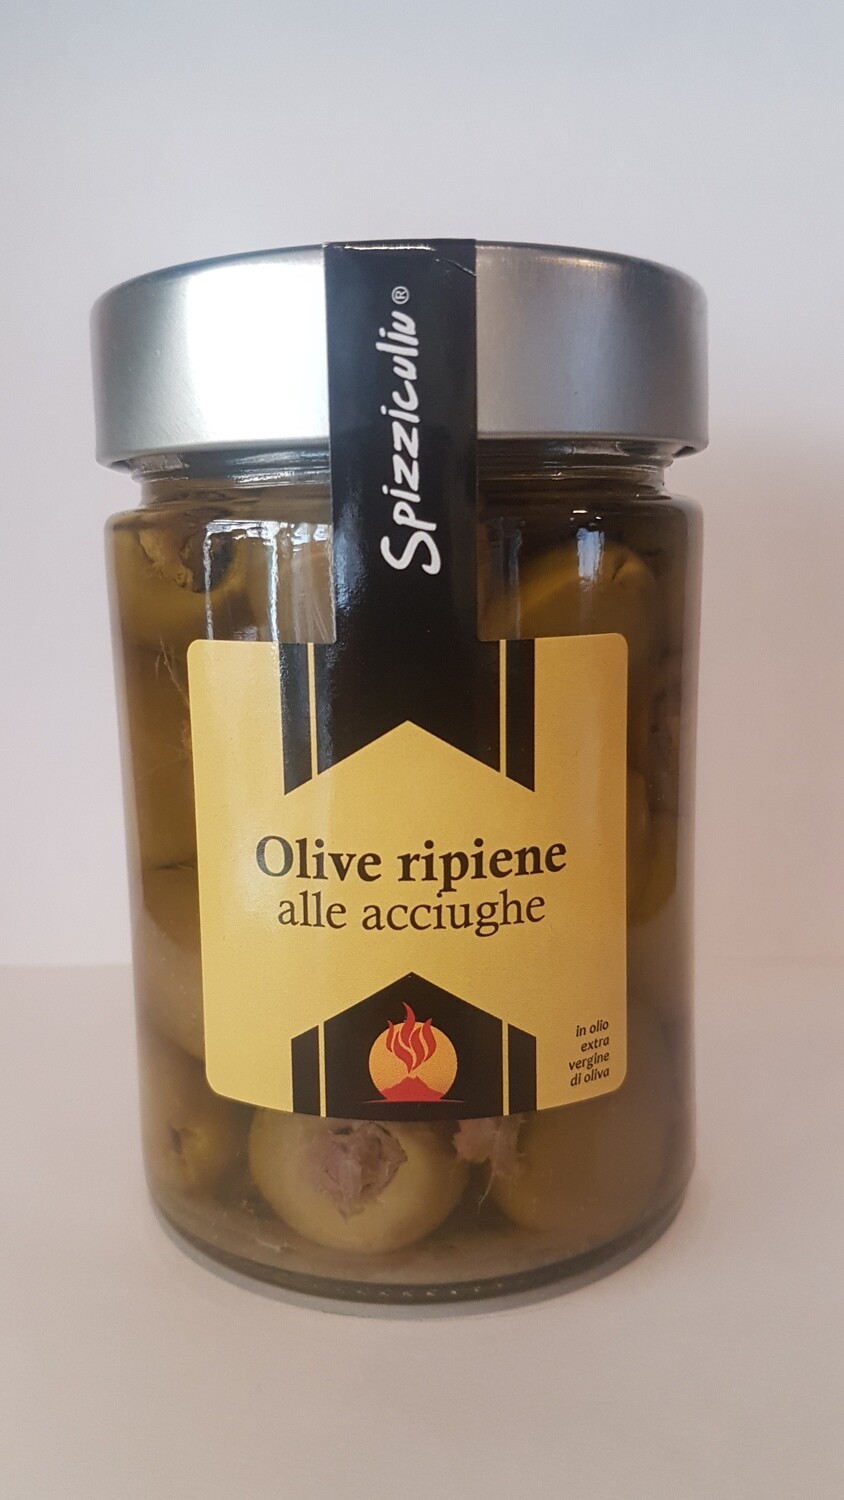 Olive ripiene alle acciughe